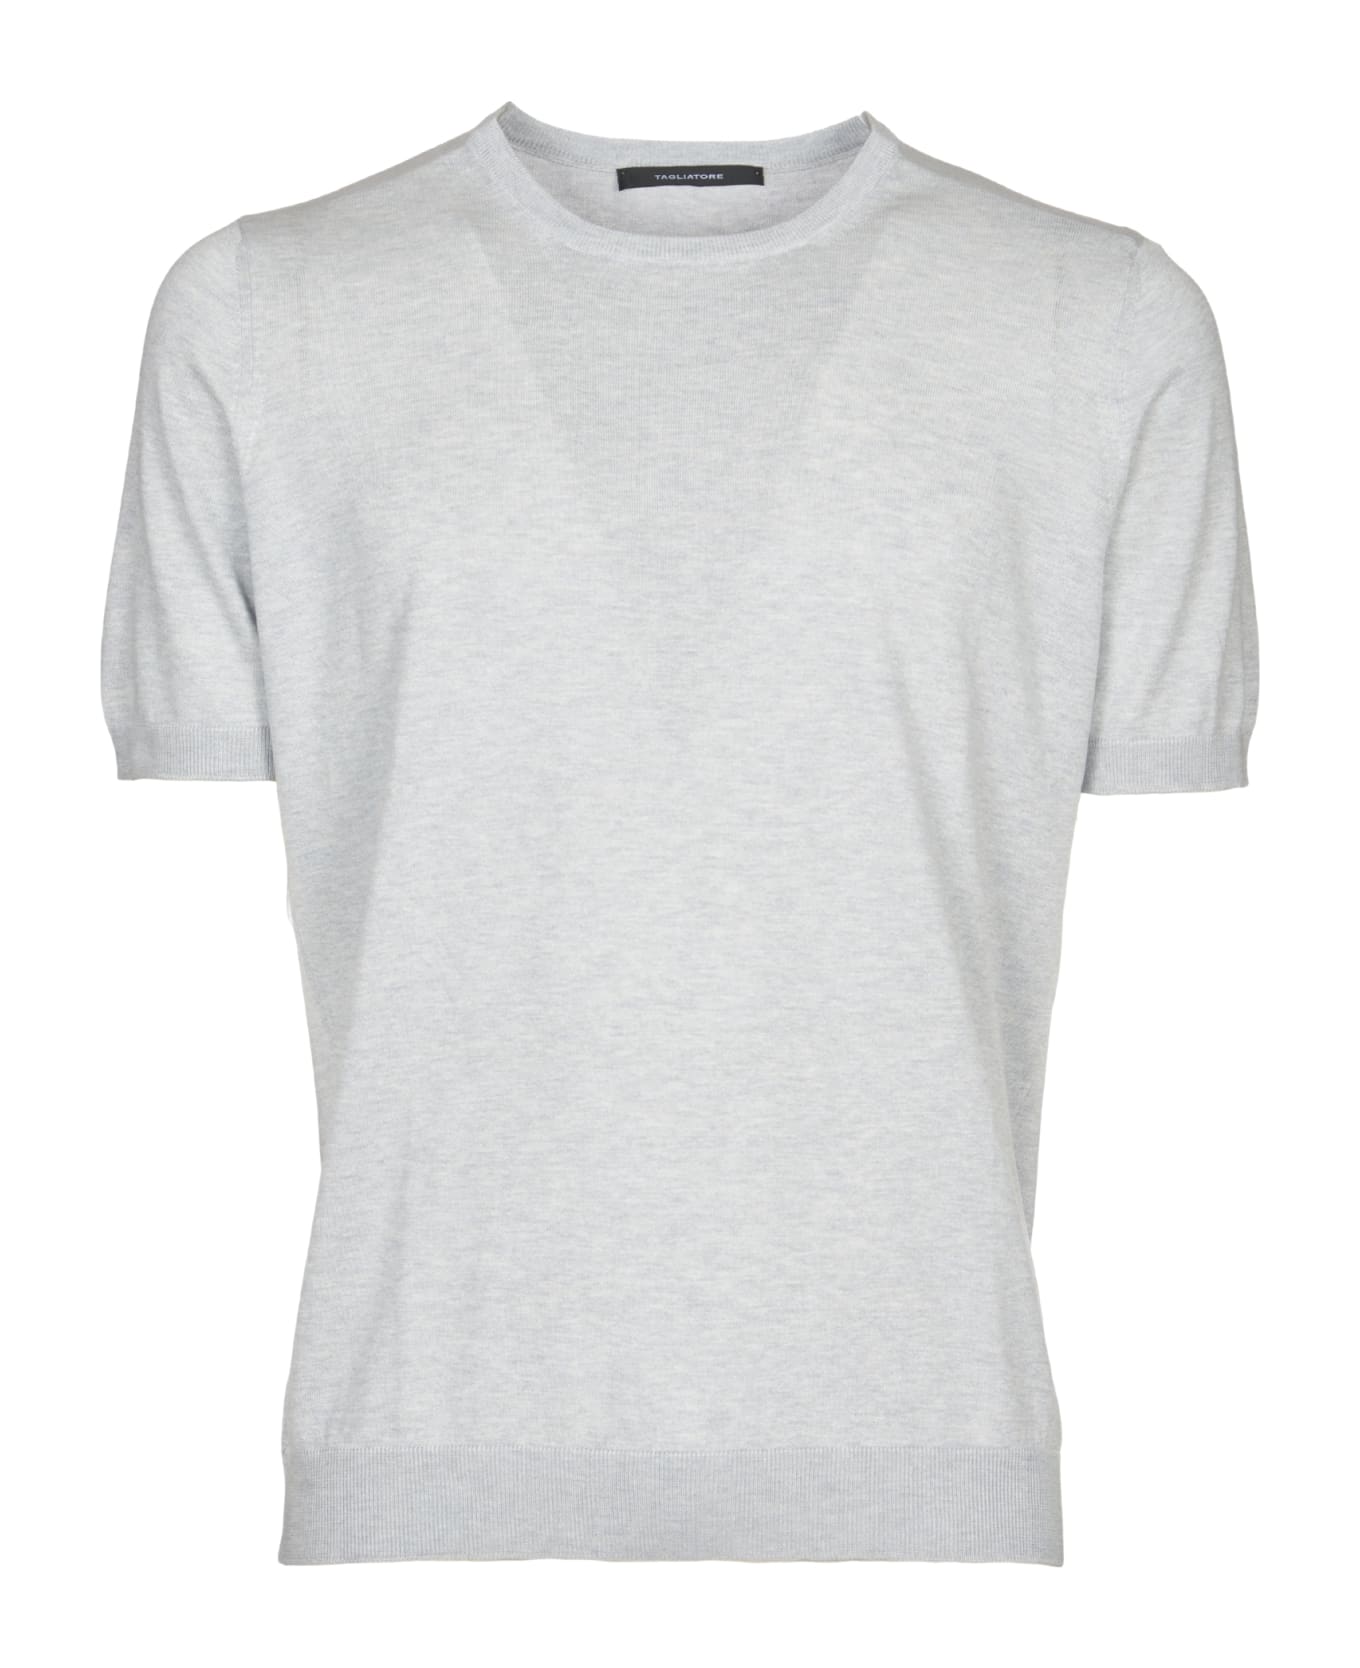 Tagliatore T-shirt - Grey シャツ